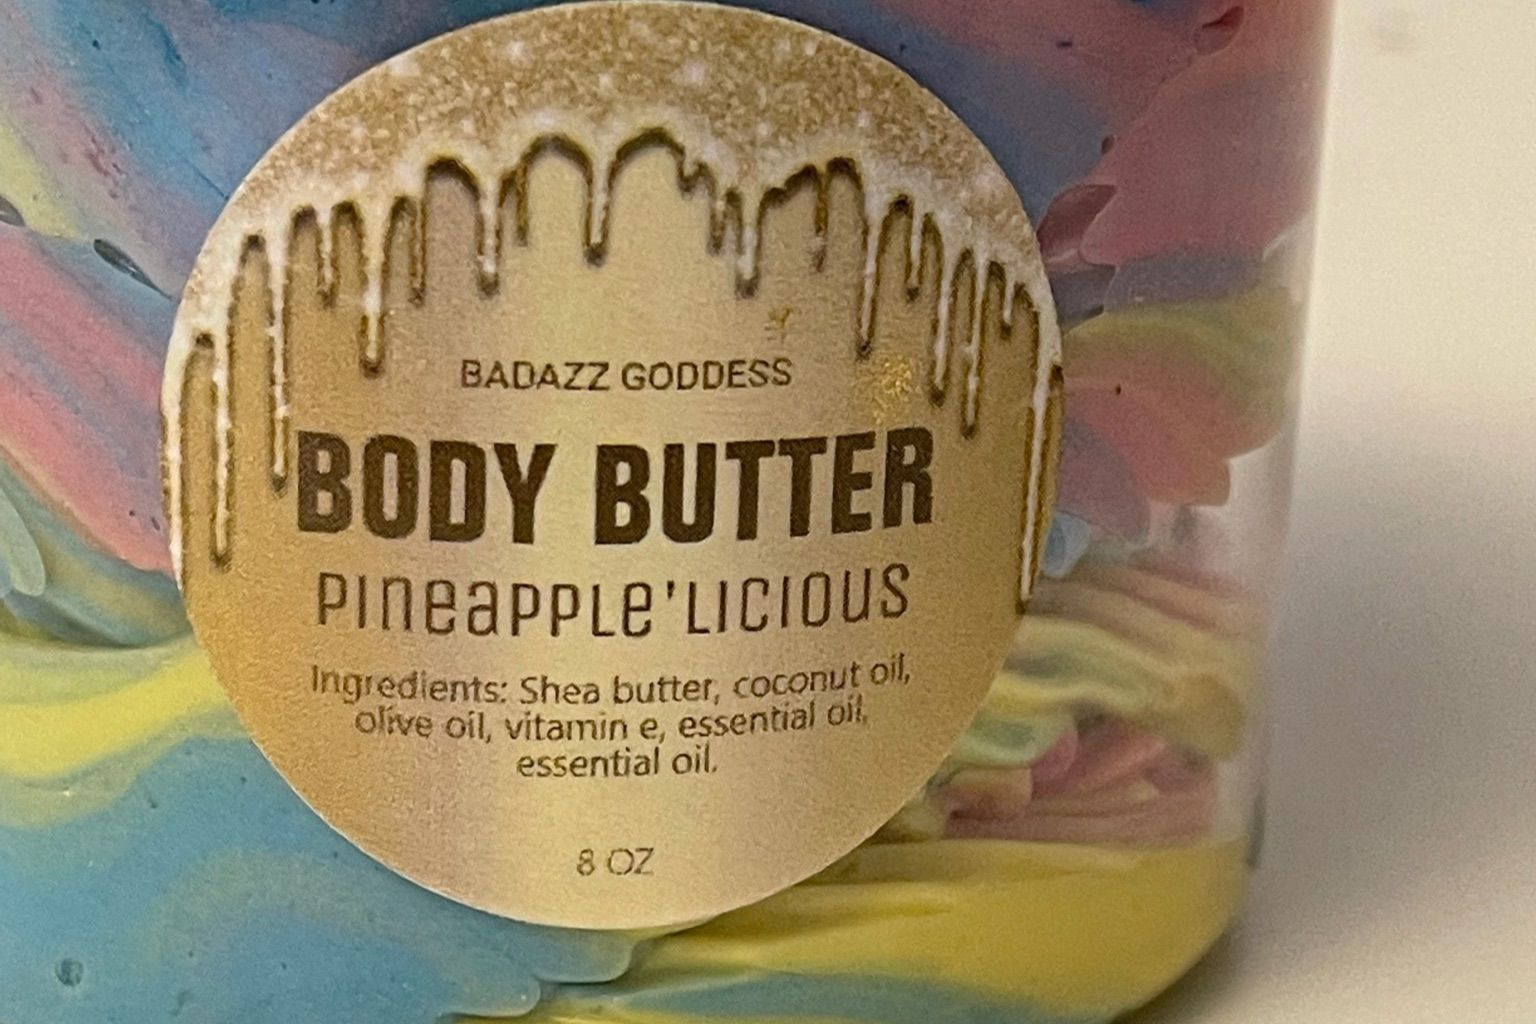 Badazz Goddess Body Butter portfolio